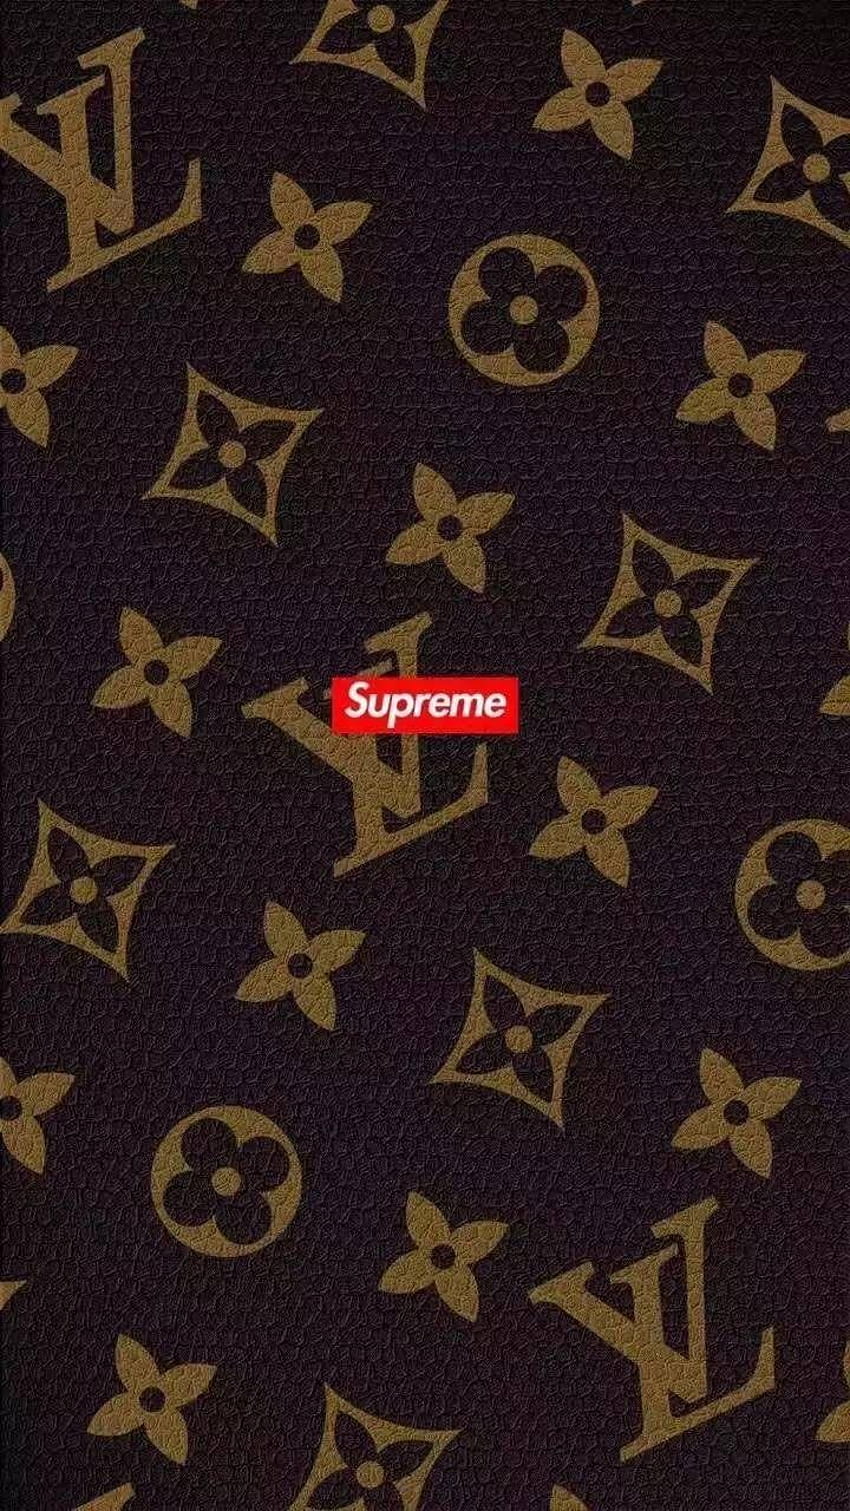 Supreme Louis Vuitton Wallpaper 1080x1080